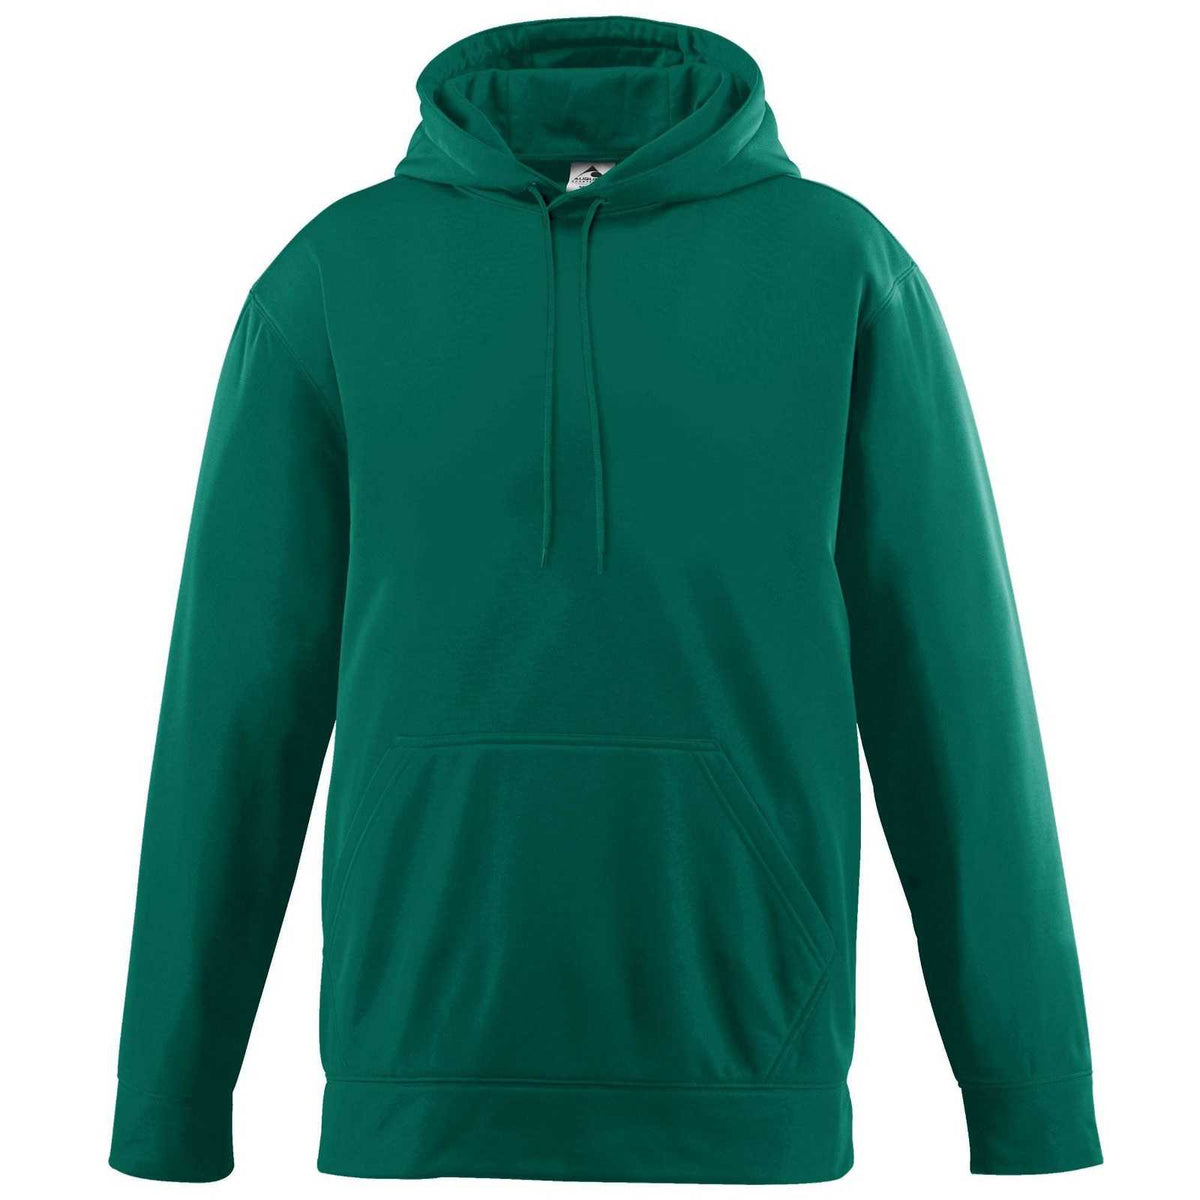 Augusta 5506 Wicking Fleece Hooded Sweatshirt - Youth - Dark Green - HIT a Double